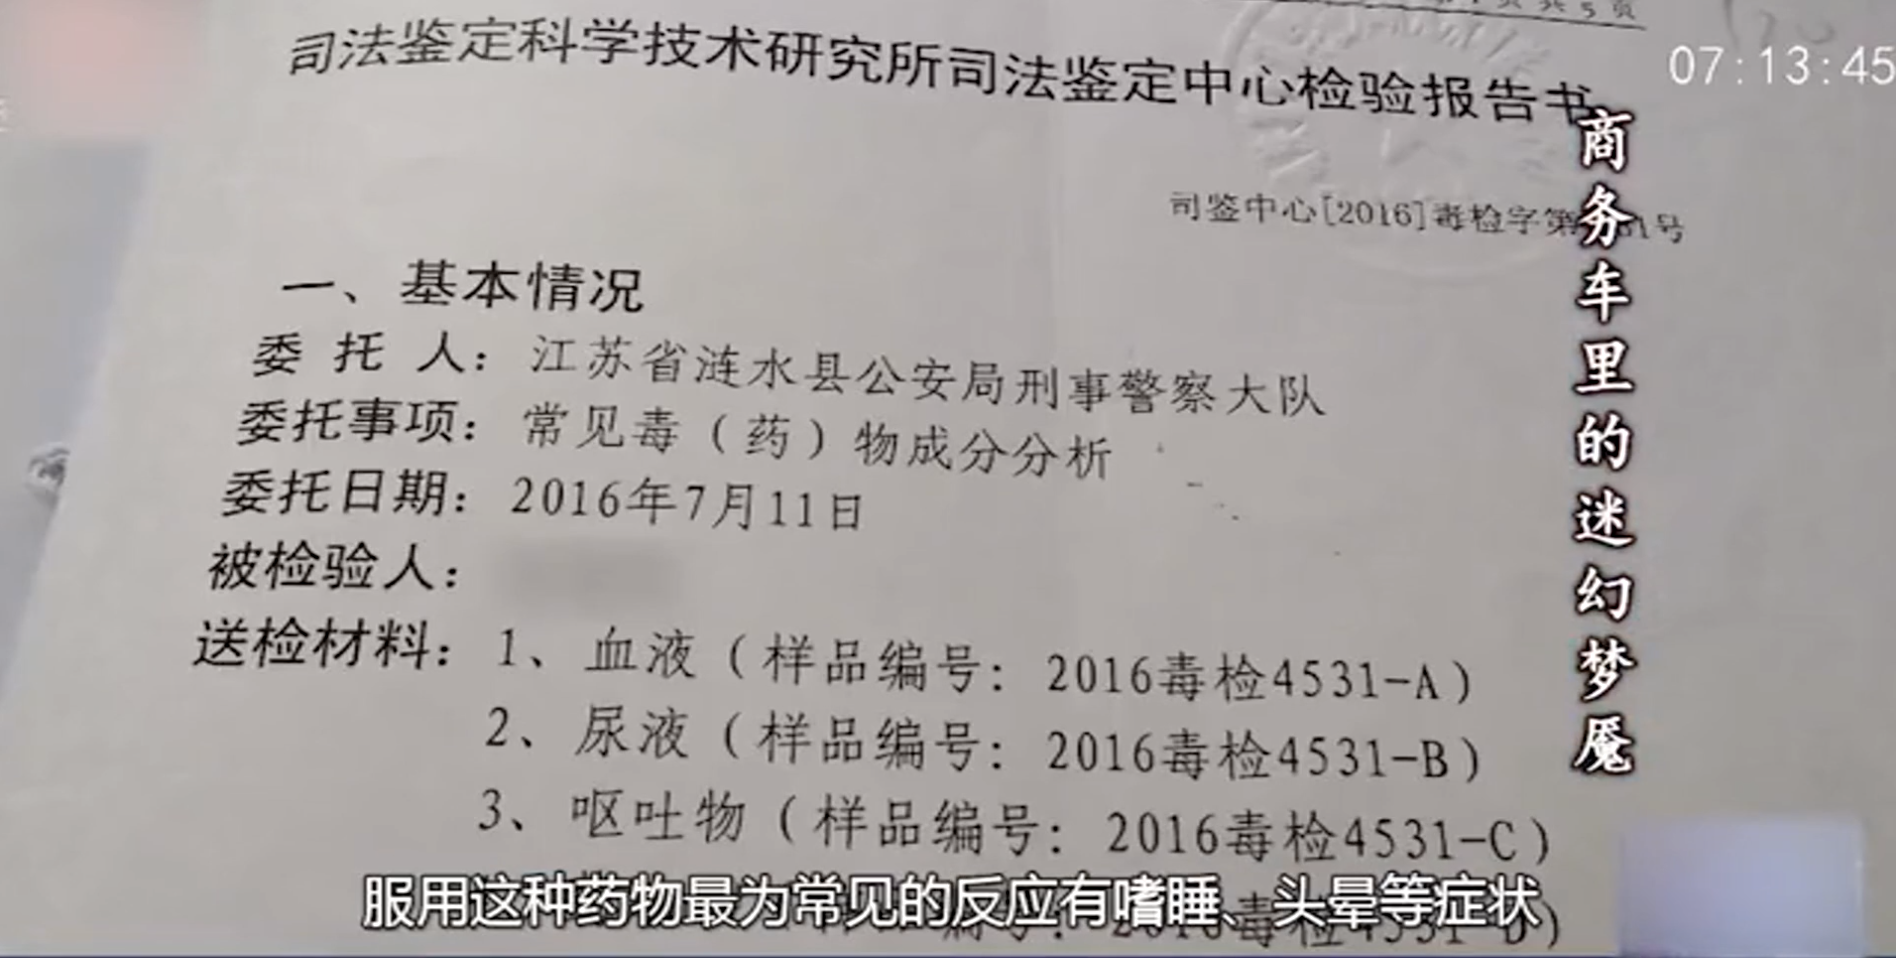 2016年，江苏省男子侵犯100名女性，仅报一名，经警方调查，查明真相。